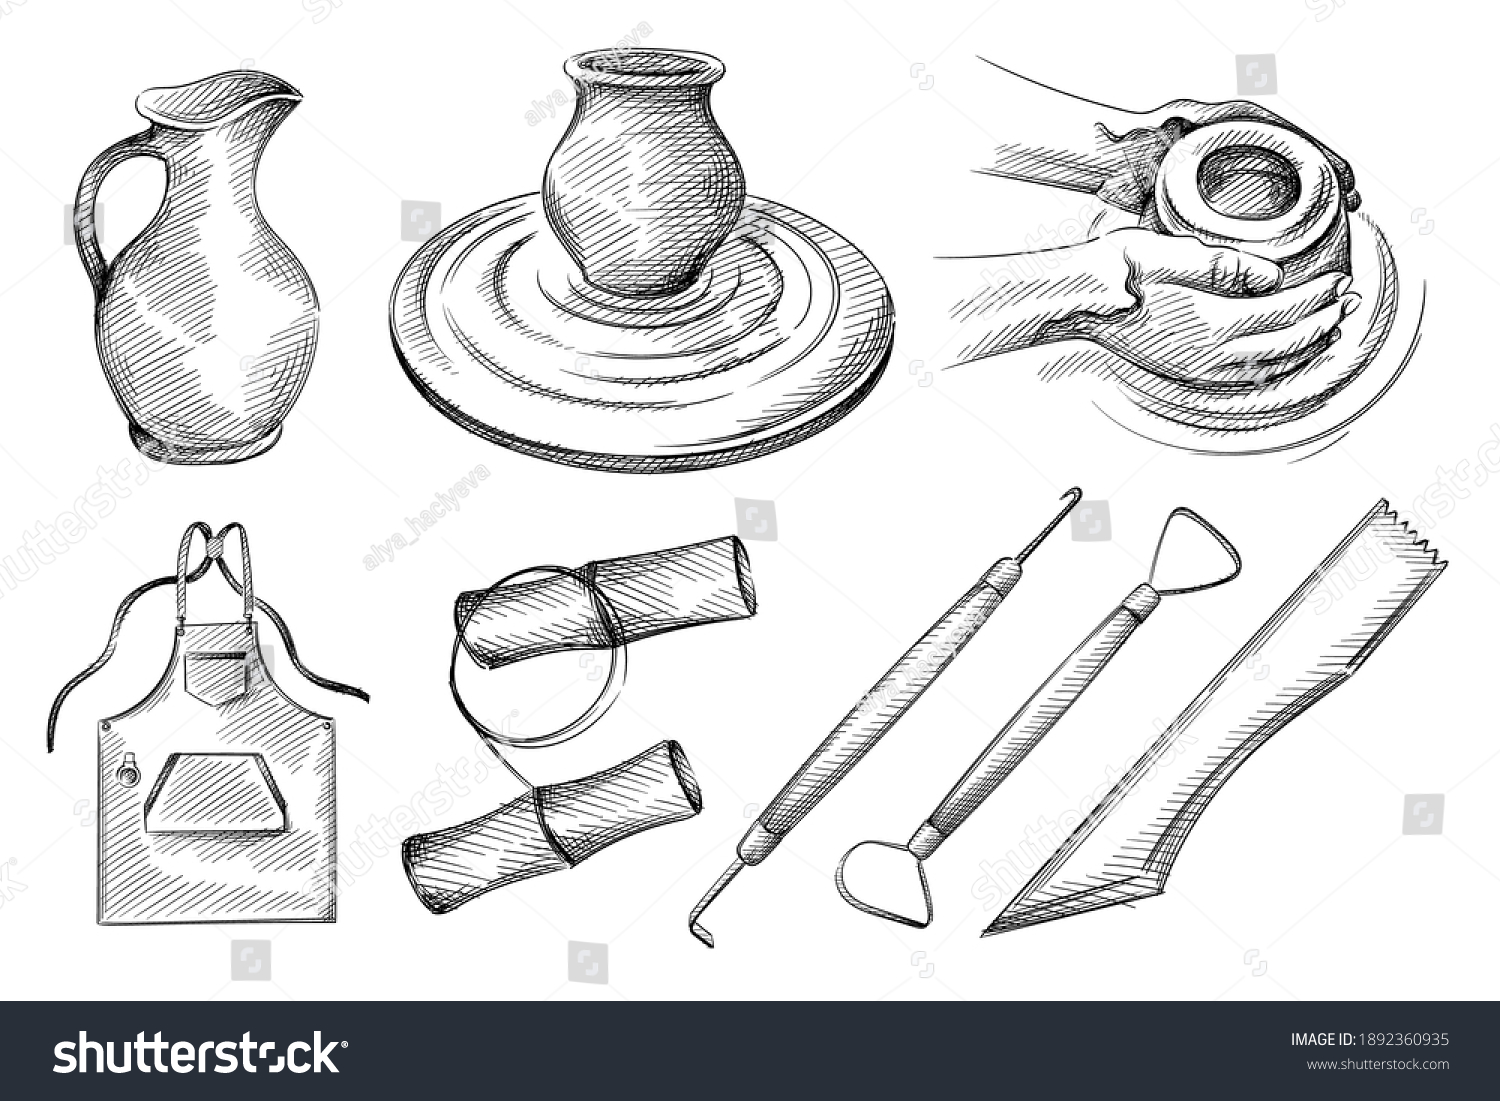 Как выглядят эскизы керамической посуды на листе а 4